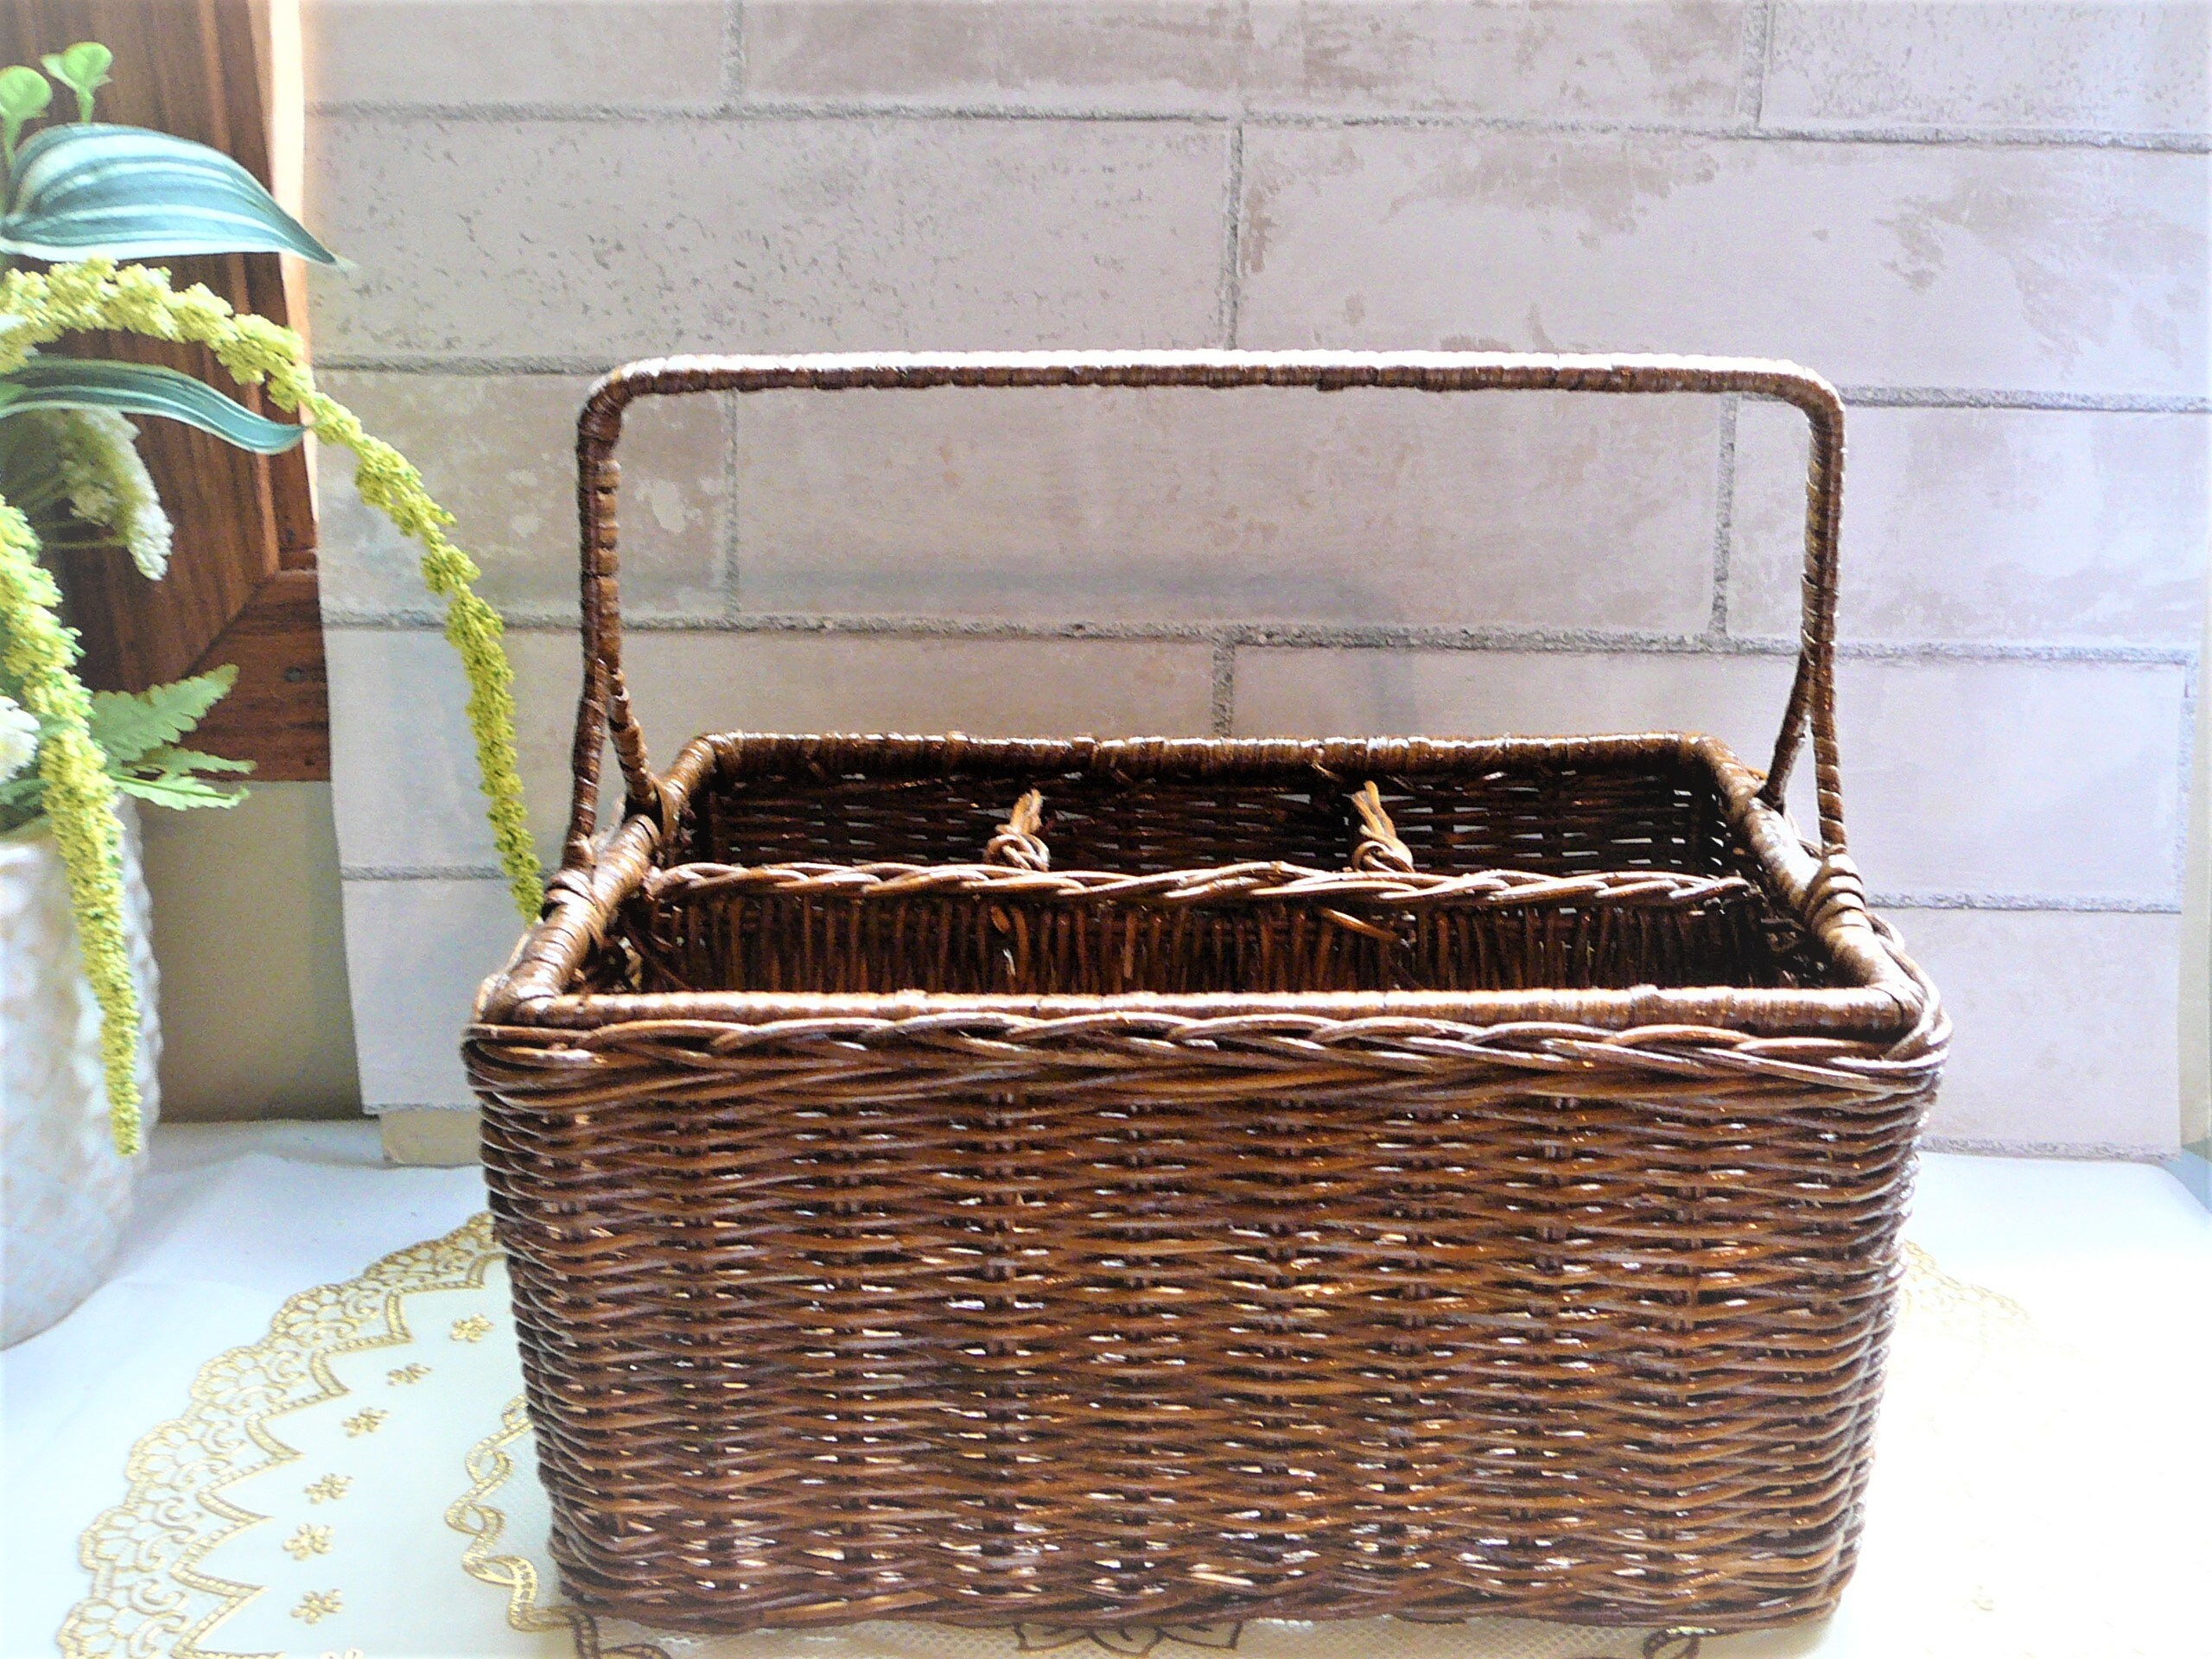 UPKOCH Wicker Storage Basket Round Storage Basket Picnic Bread Container Flower Basket for Home 